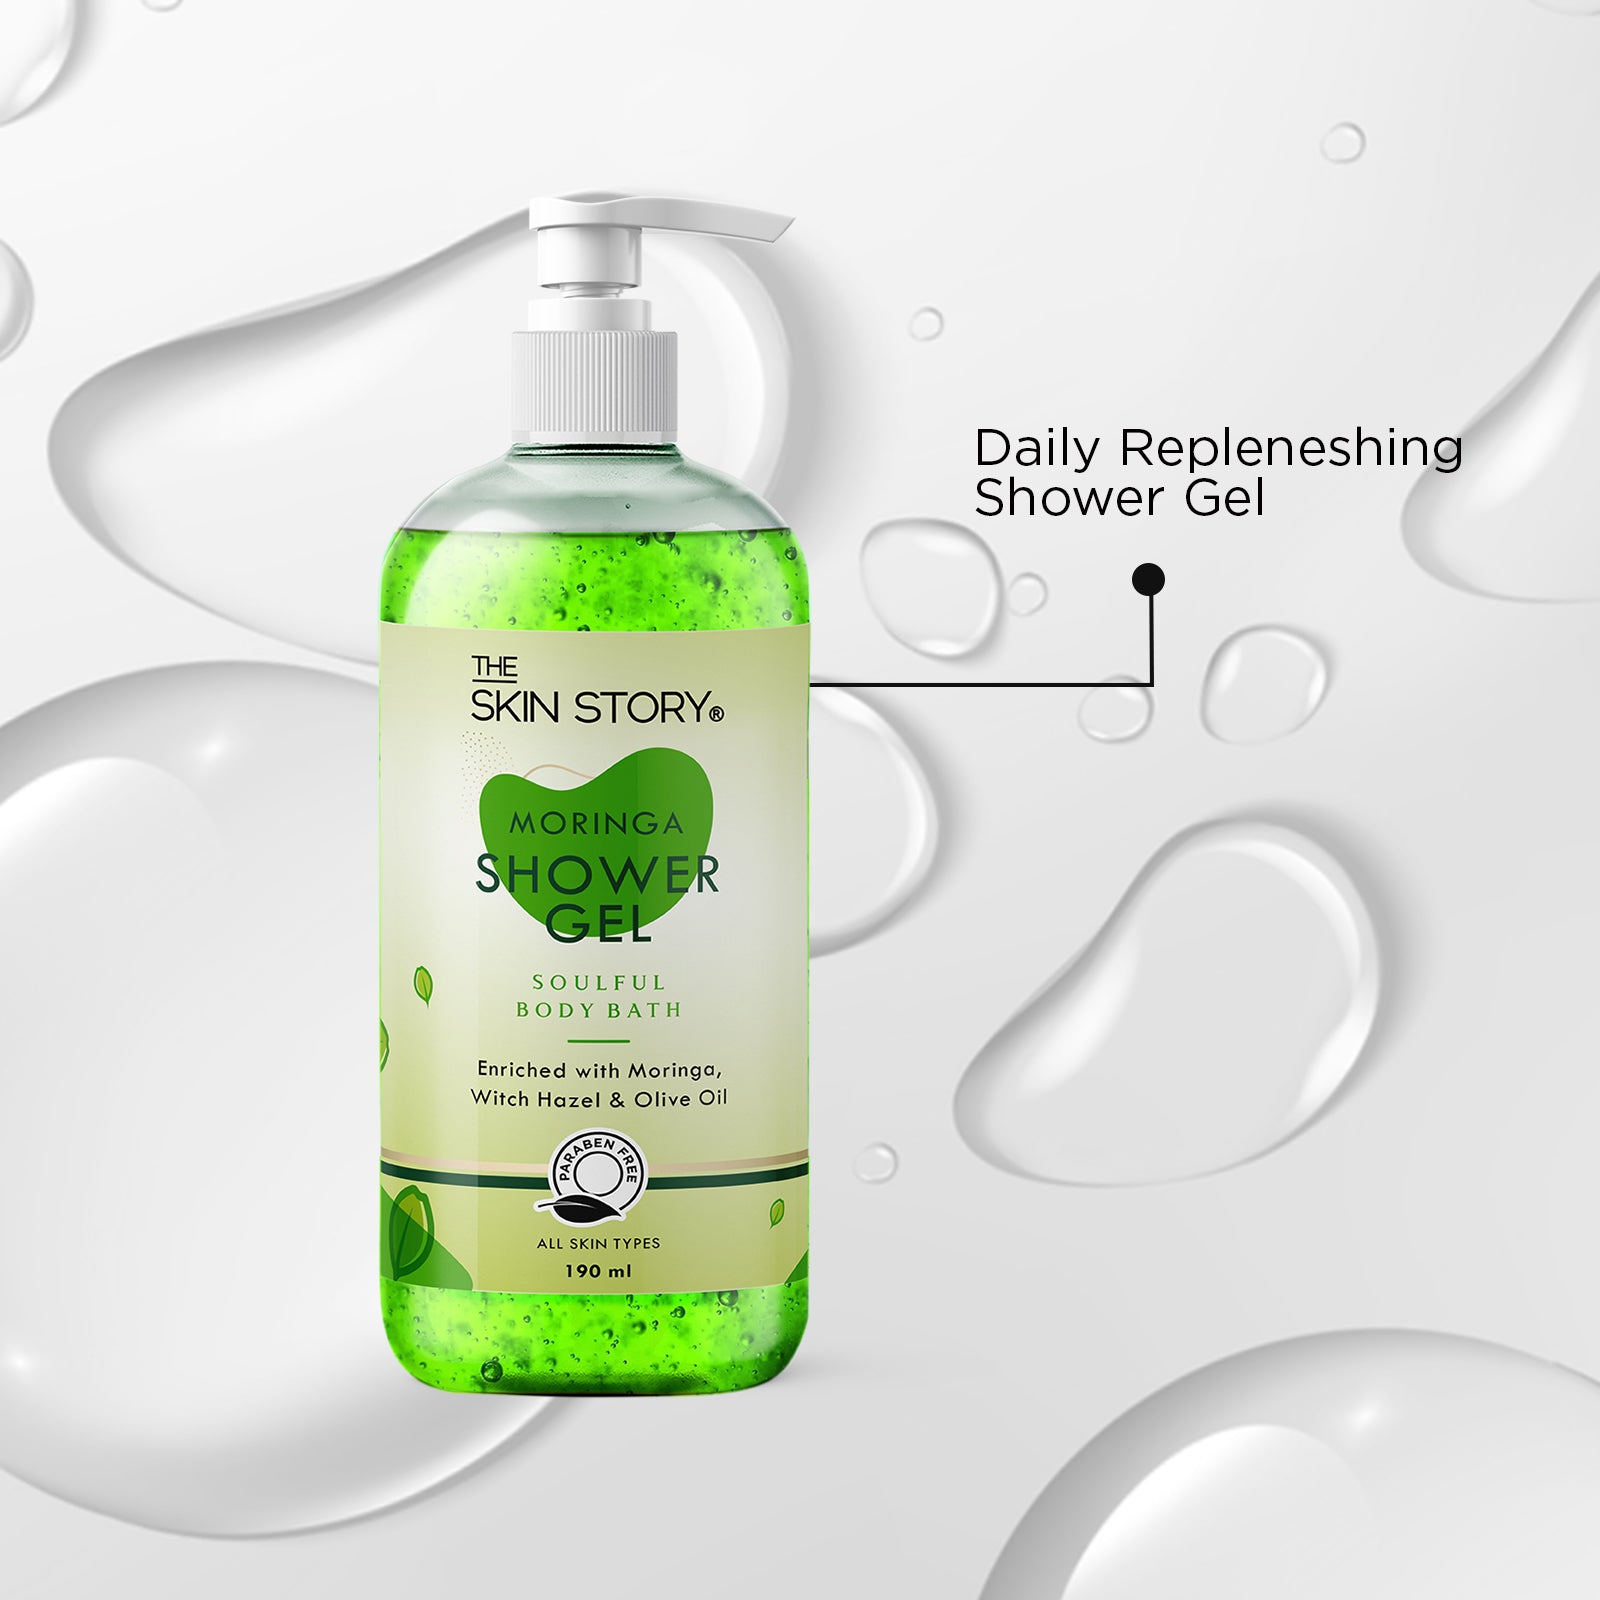 The Skin Story Refreshing Moringa Daily Shower Gel |Foaming & Deep Cleansing |Moringa & Shea Butter Body Wash for women| 190ml